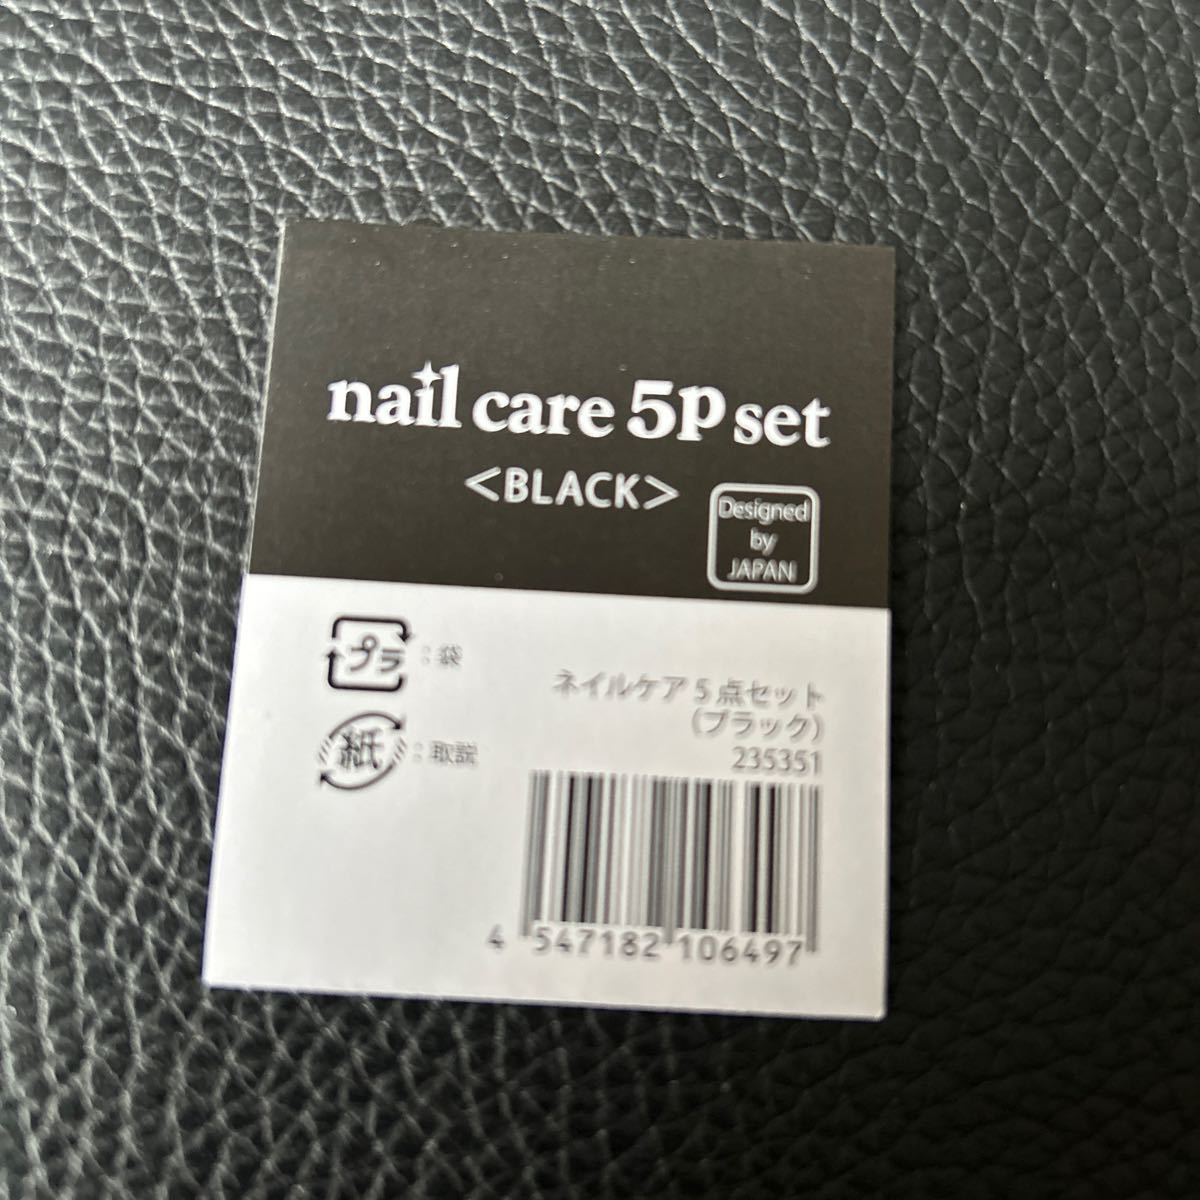  в кейсе не использовался * Peugeot оригинал уход за ногтями комплект /PEUGEOT original nail care 5P set / кусачки для ногтей зажим пилочка для ногтей уголок .. и т.п. *